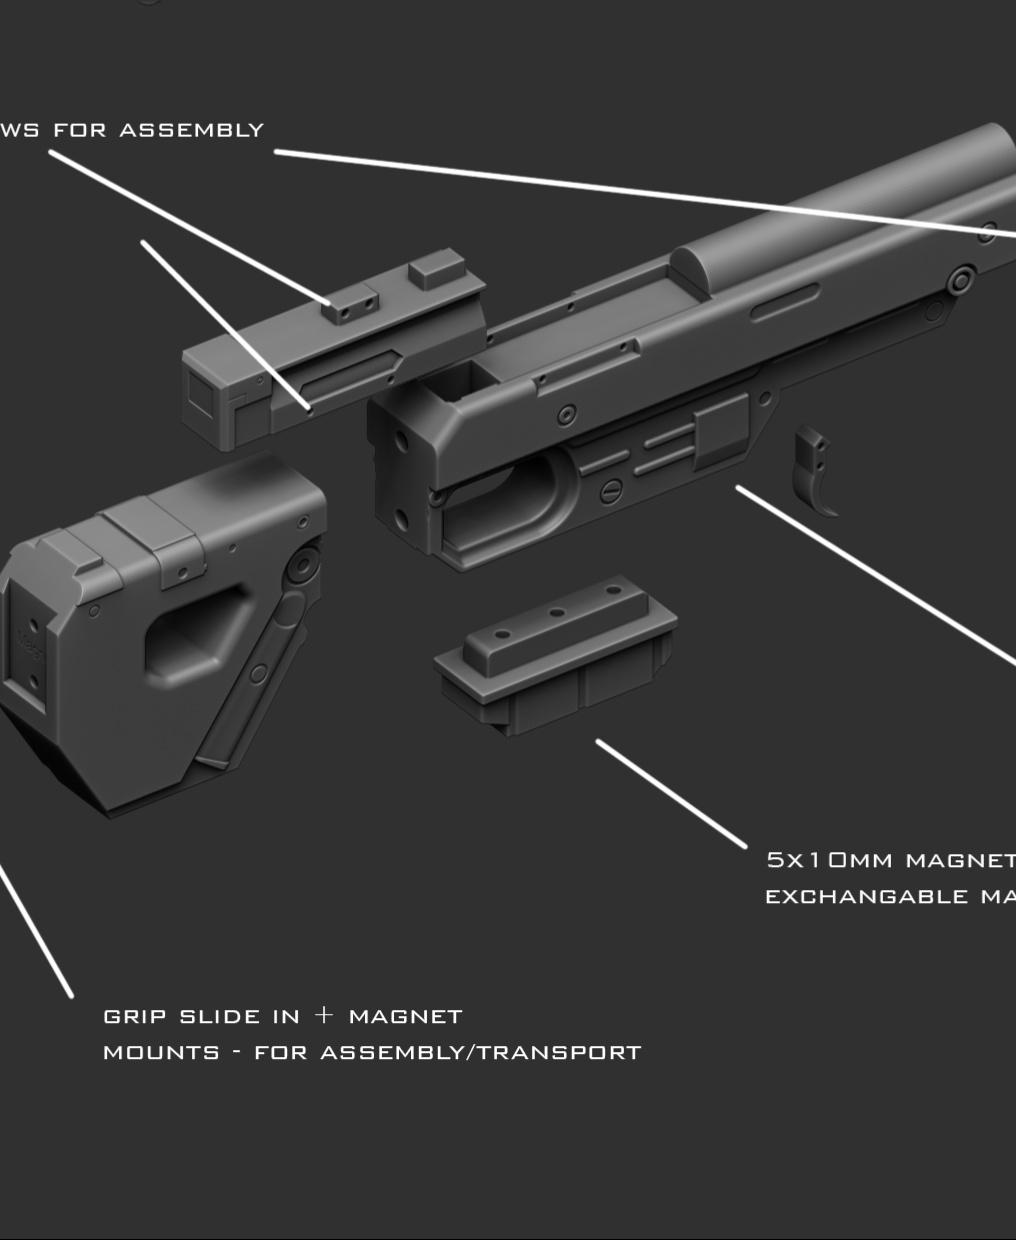 IQA-11 blaster rifle 3d model